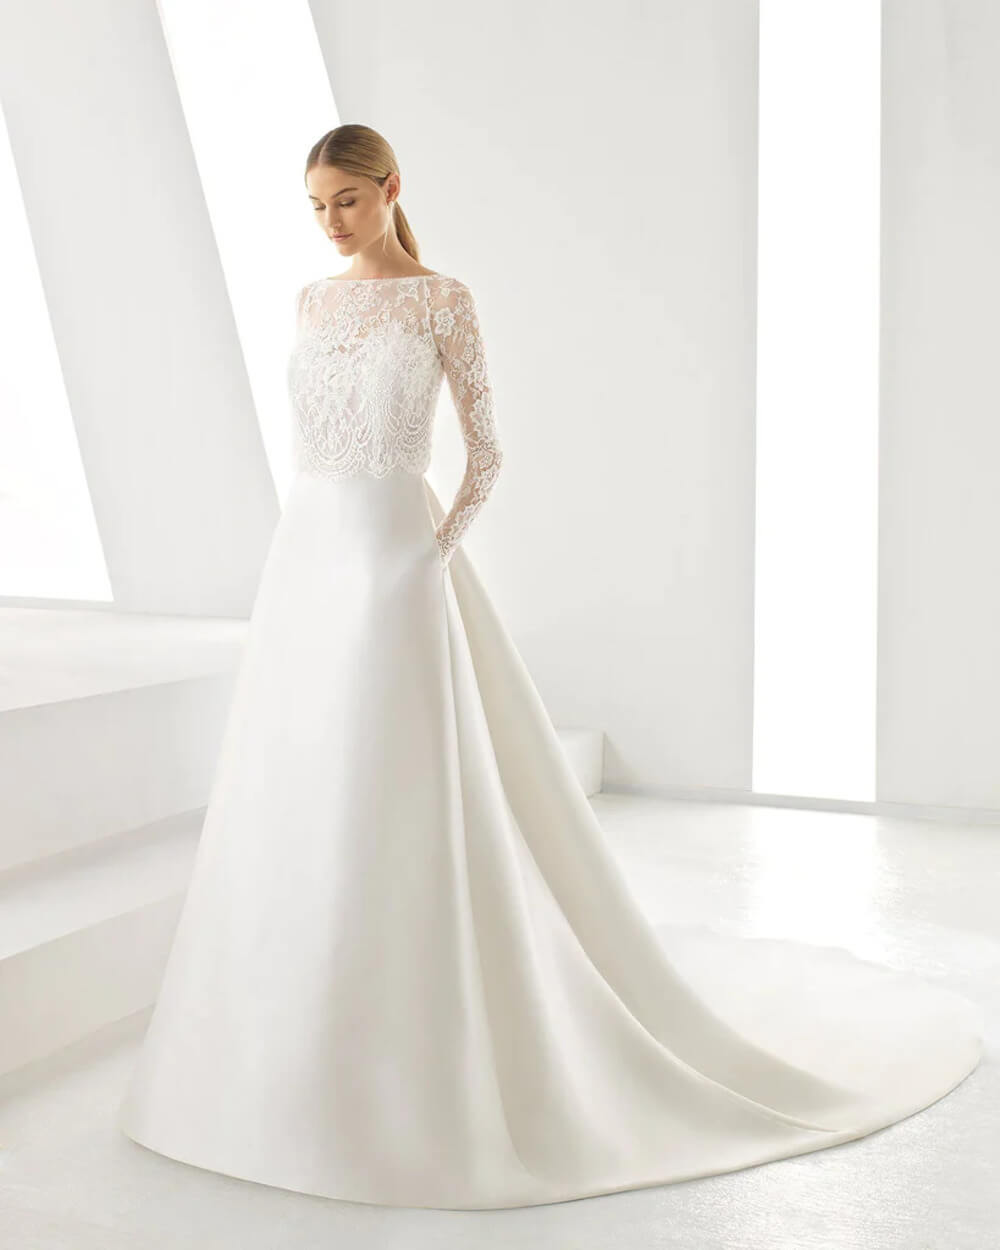 Váy cưới thiết kế đơn giản, nhẹ nhàng, tôn lên vẻ đẹp thanh lịch của nàng dâu 